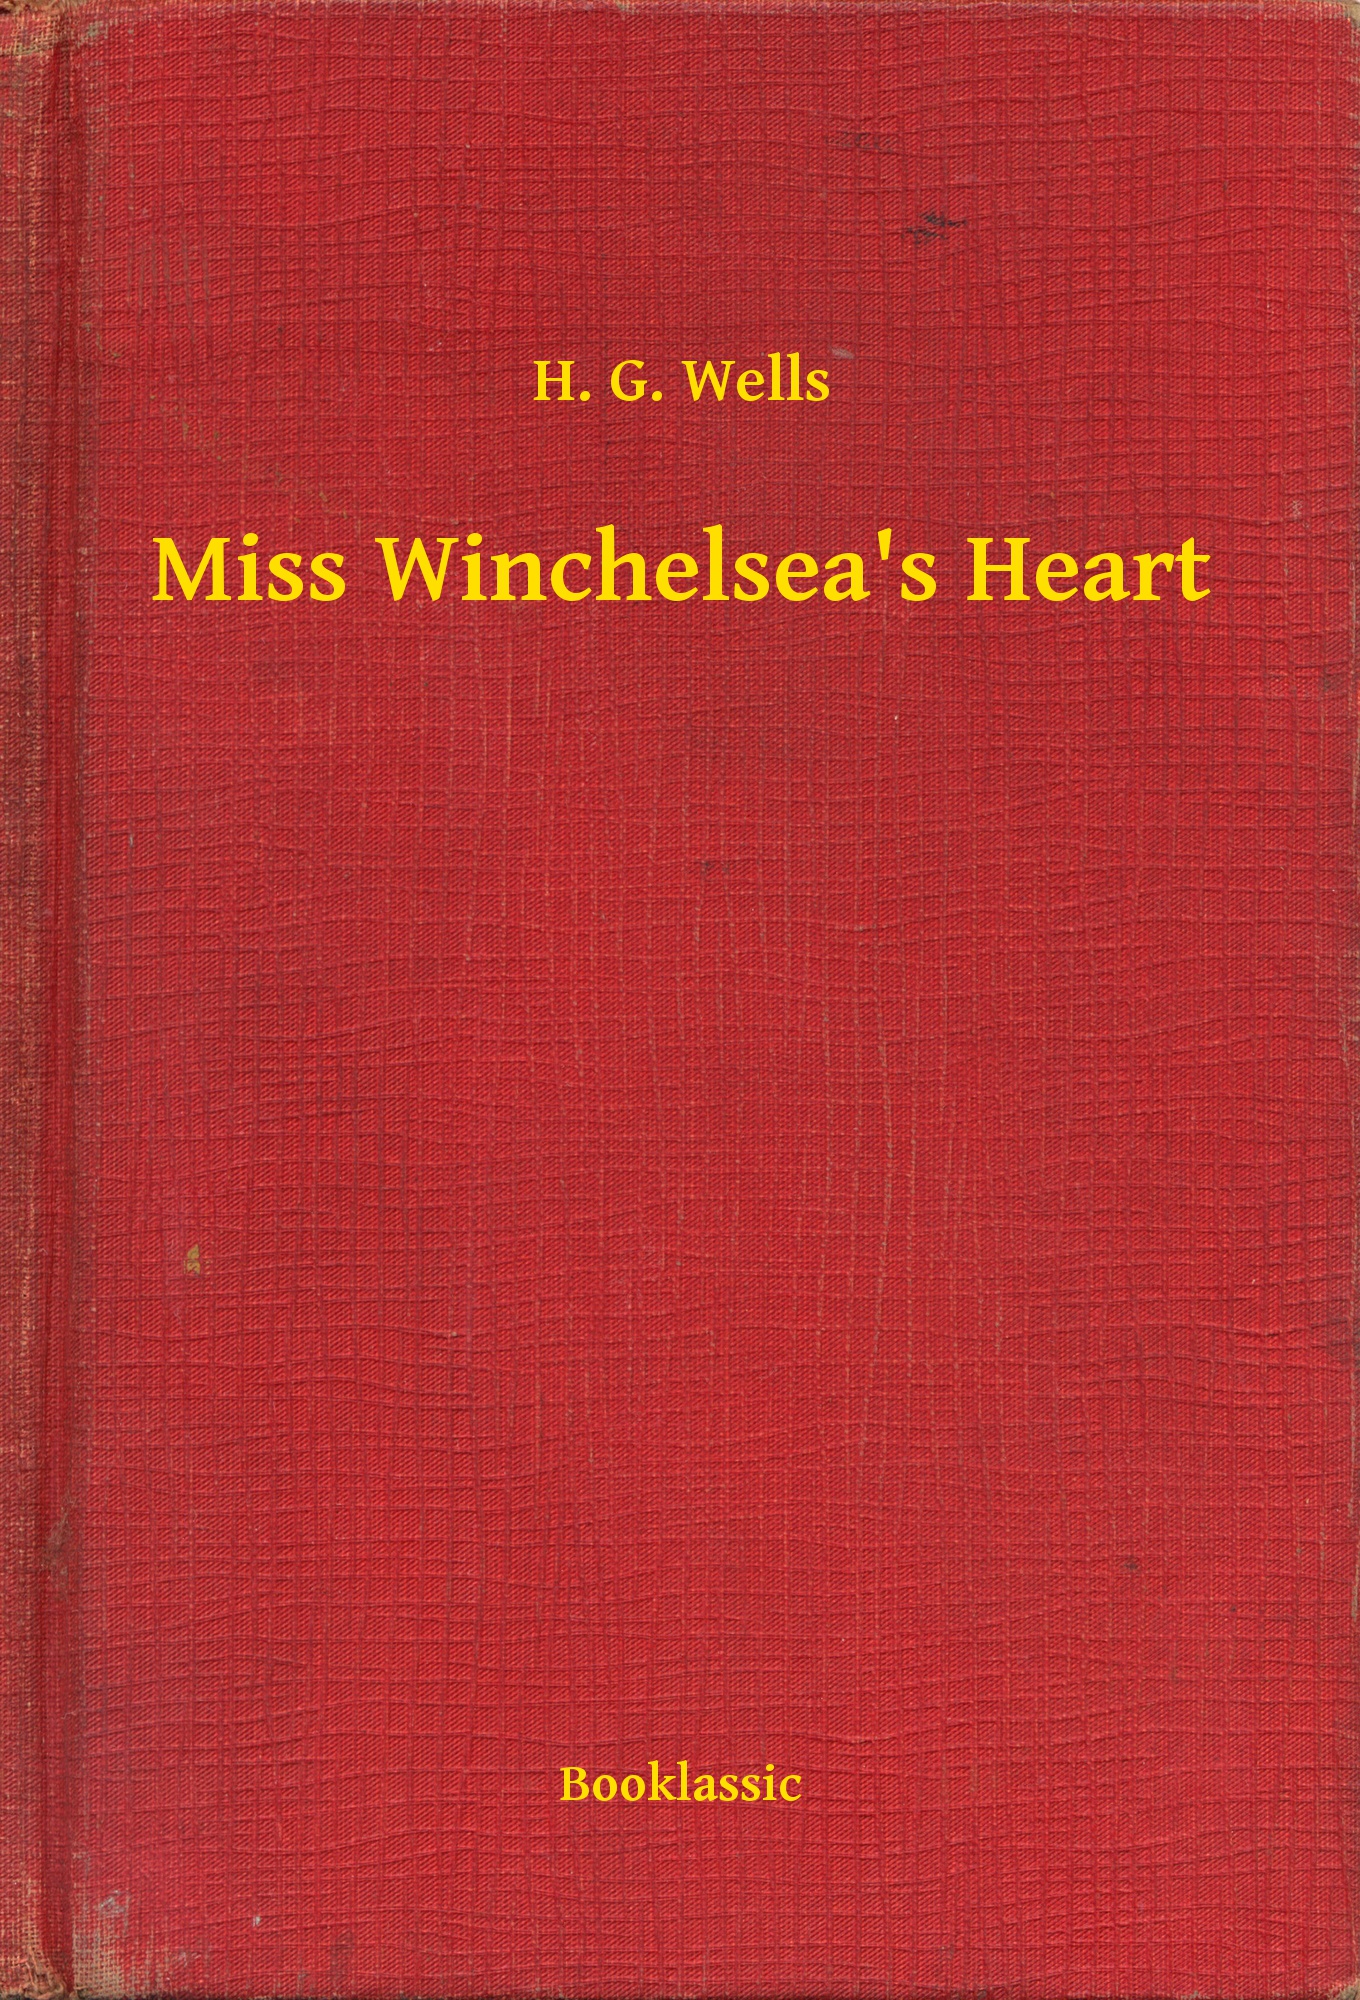 Miss Winchelsea"s Heart